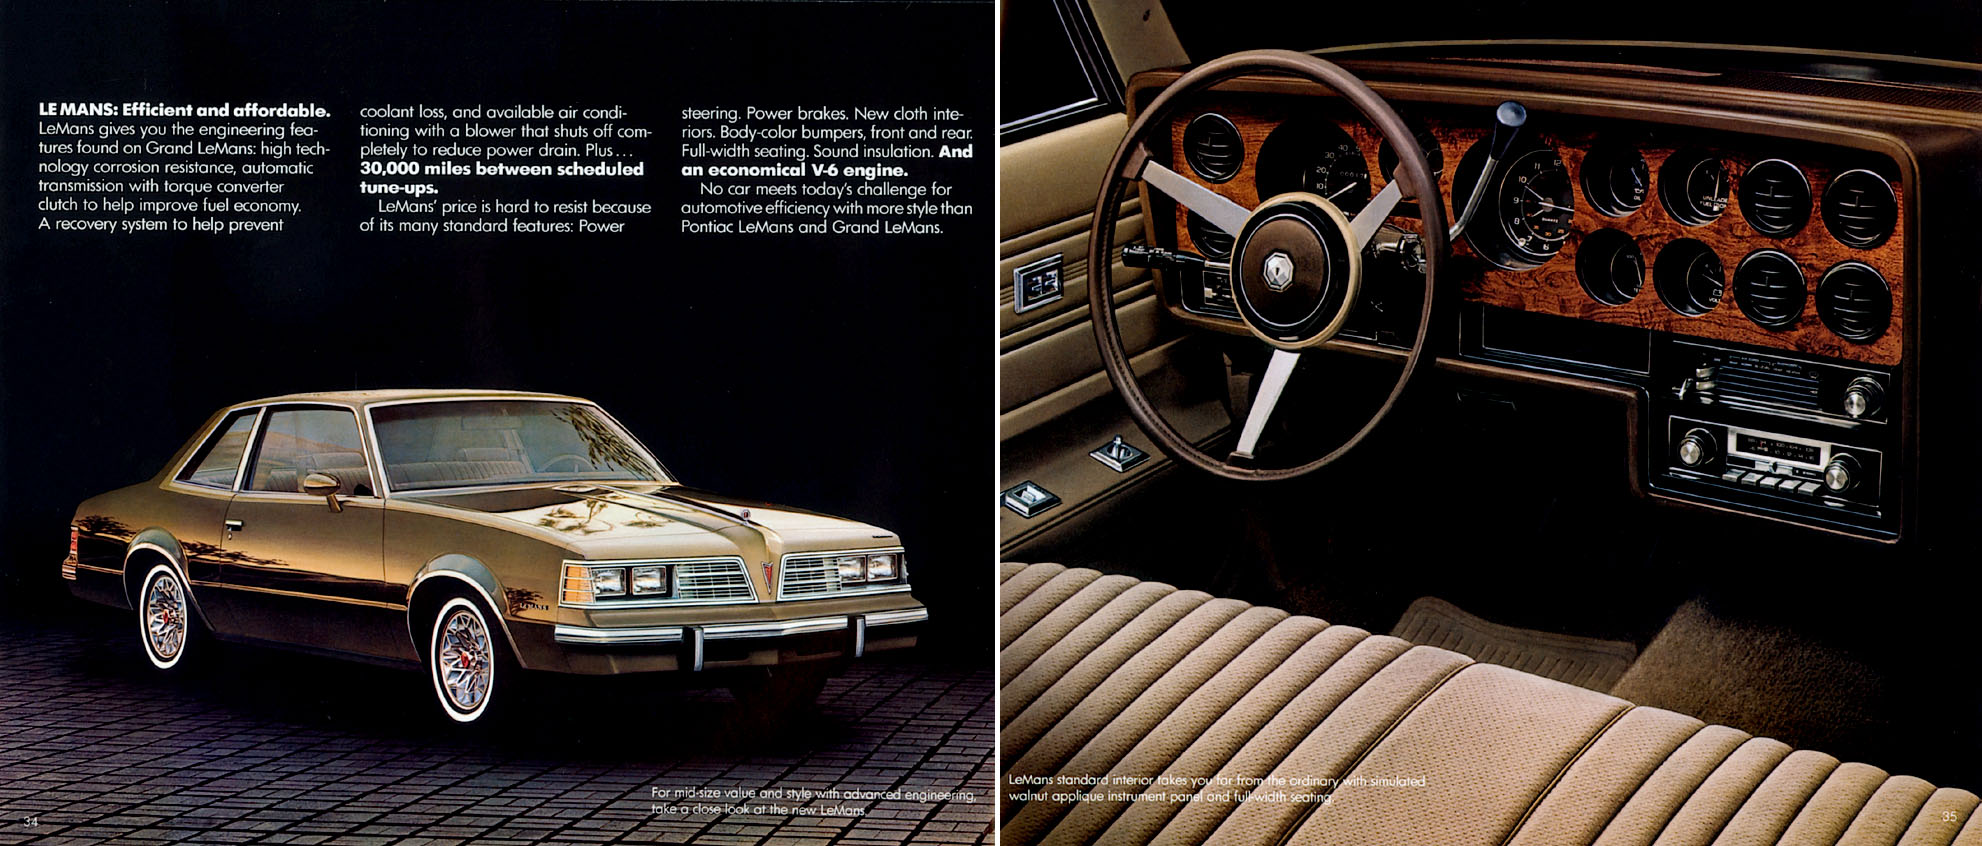 1981 Pontiac